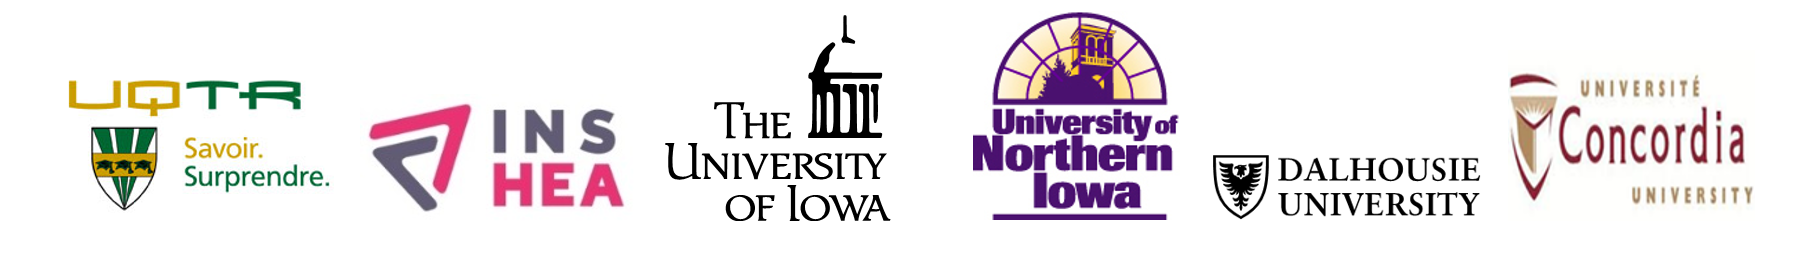 Images représentans les logos de UQTR, INSHEA, The University of IOWA, University of Northen IOWA, Dalhousie University, et de l'Université de Concordia